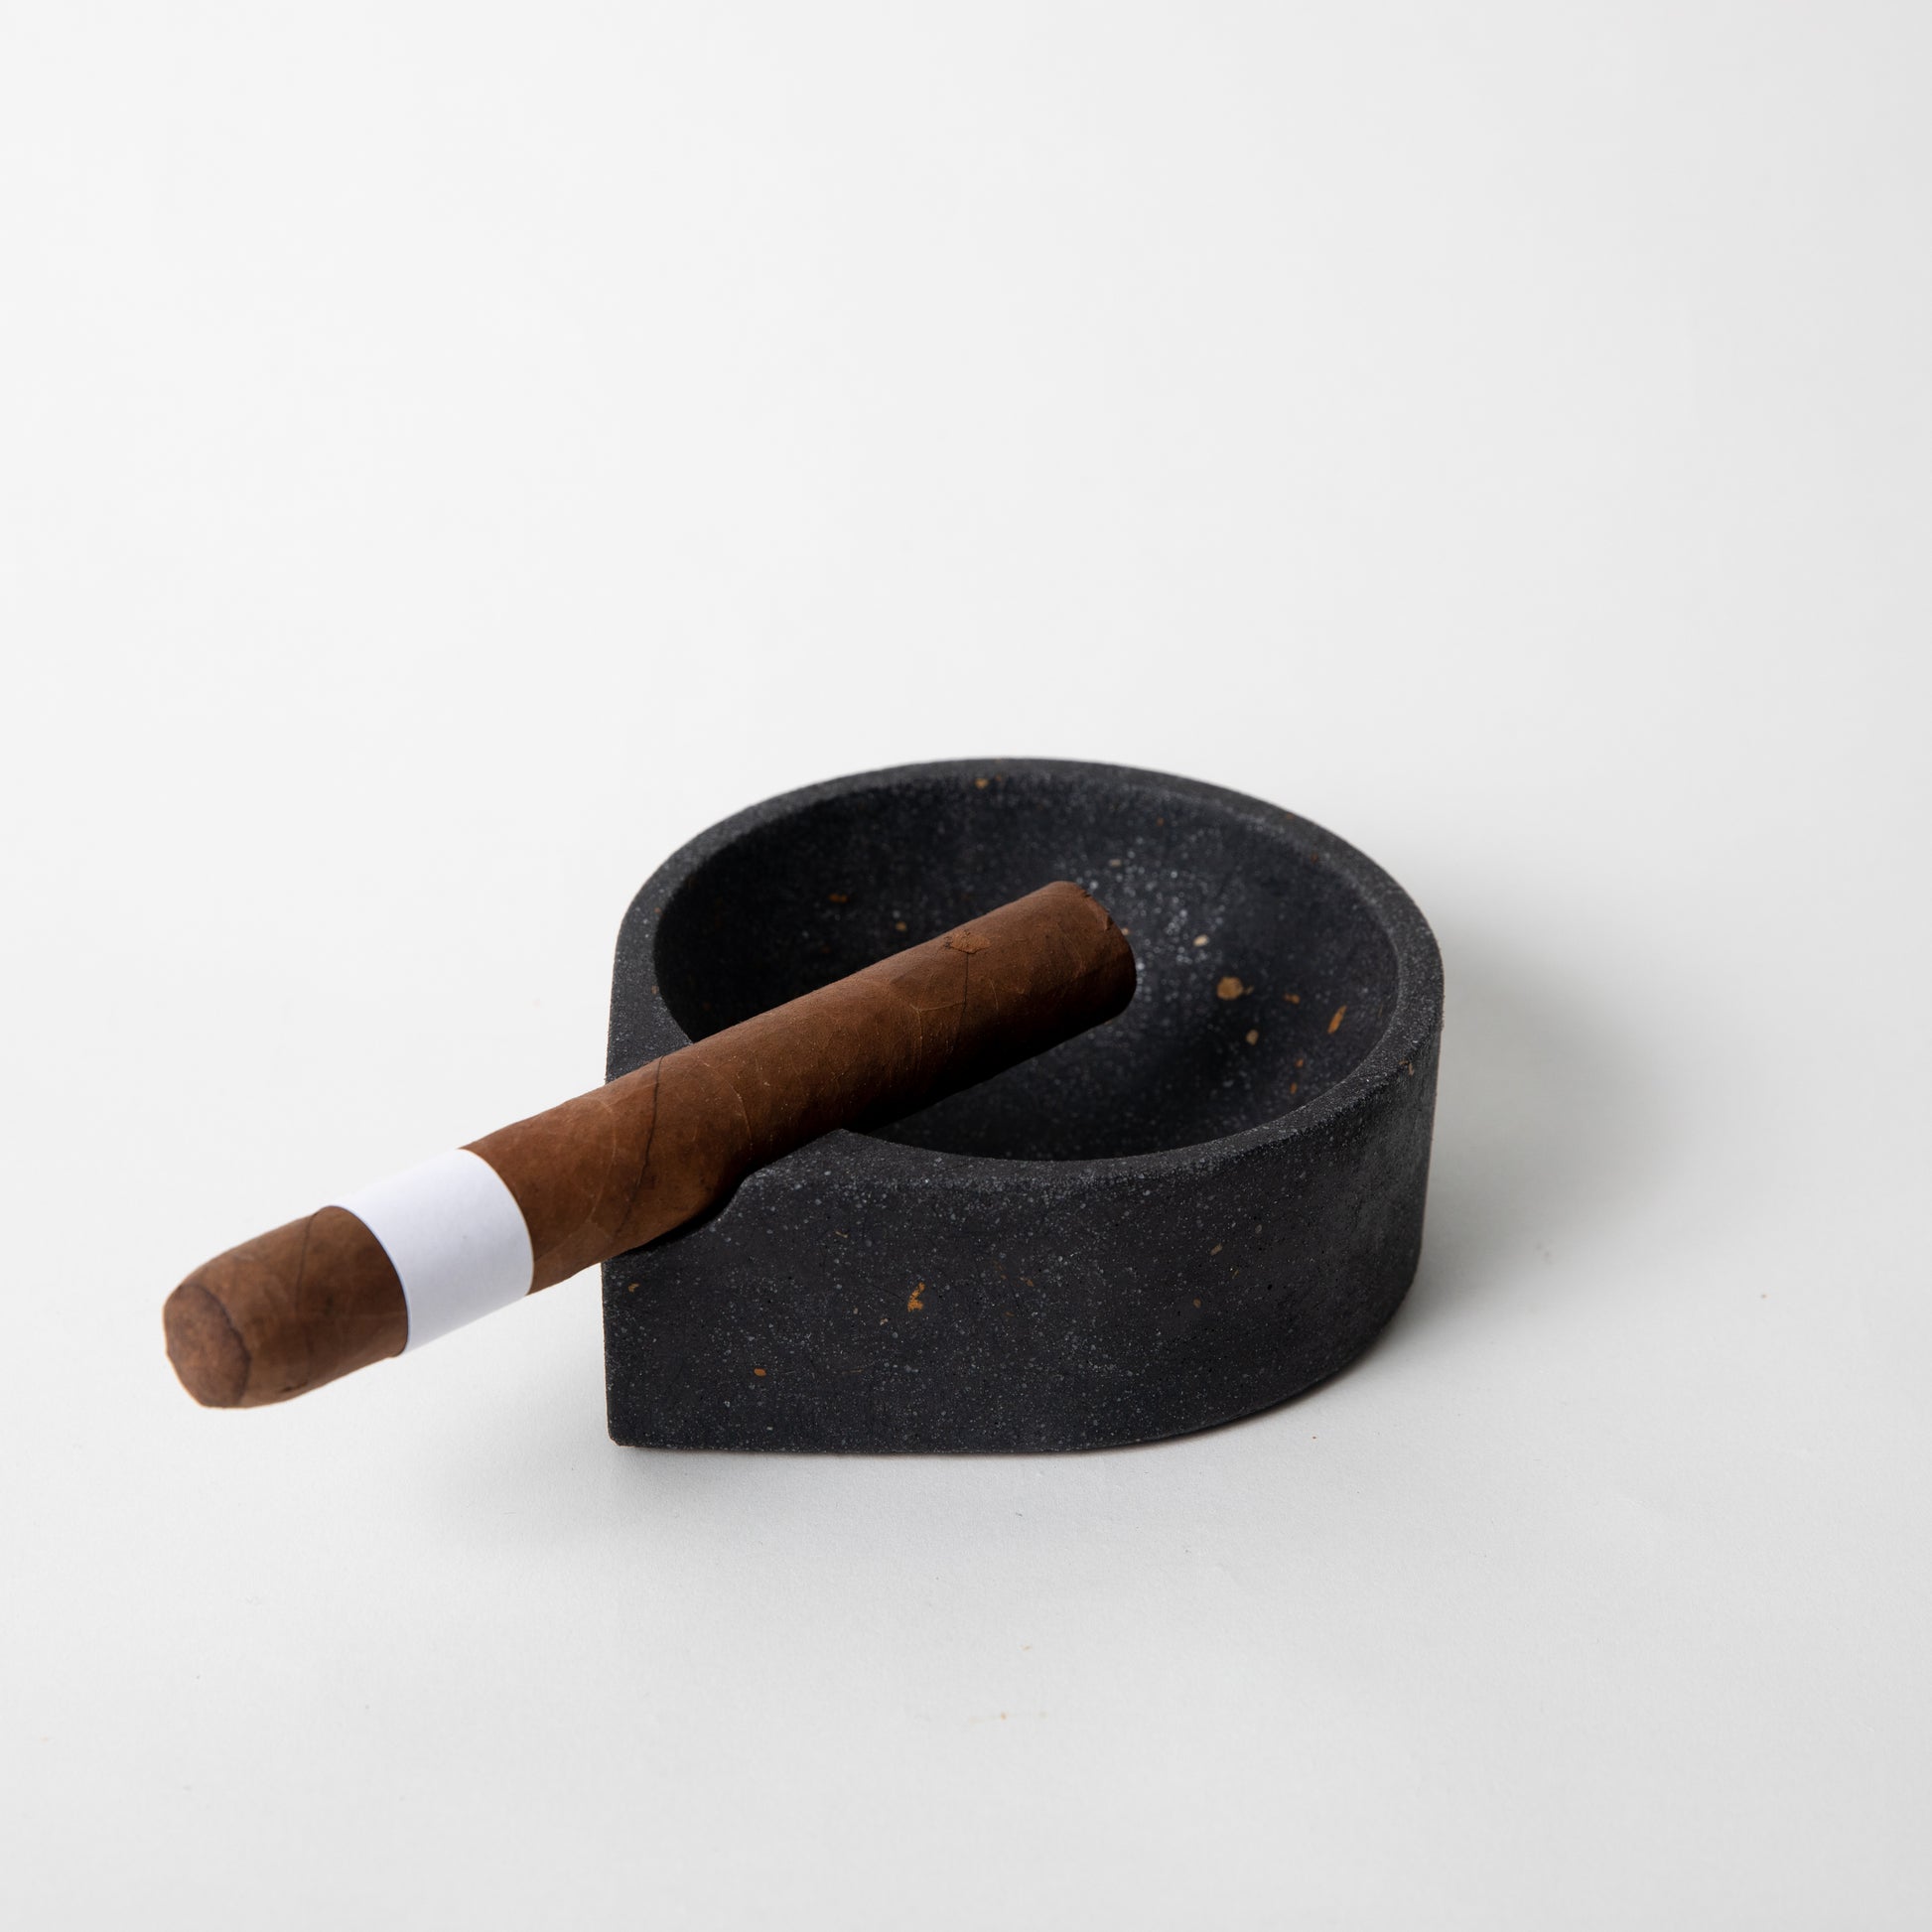 Black terrazzo ashtray w/ a cigar in it.